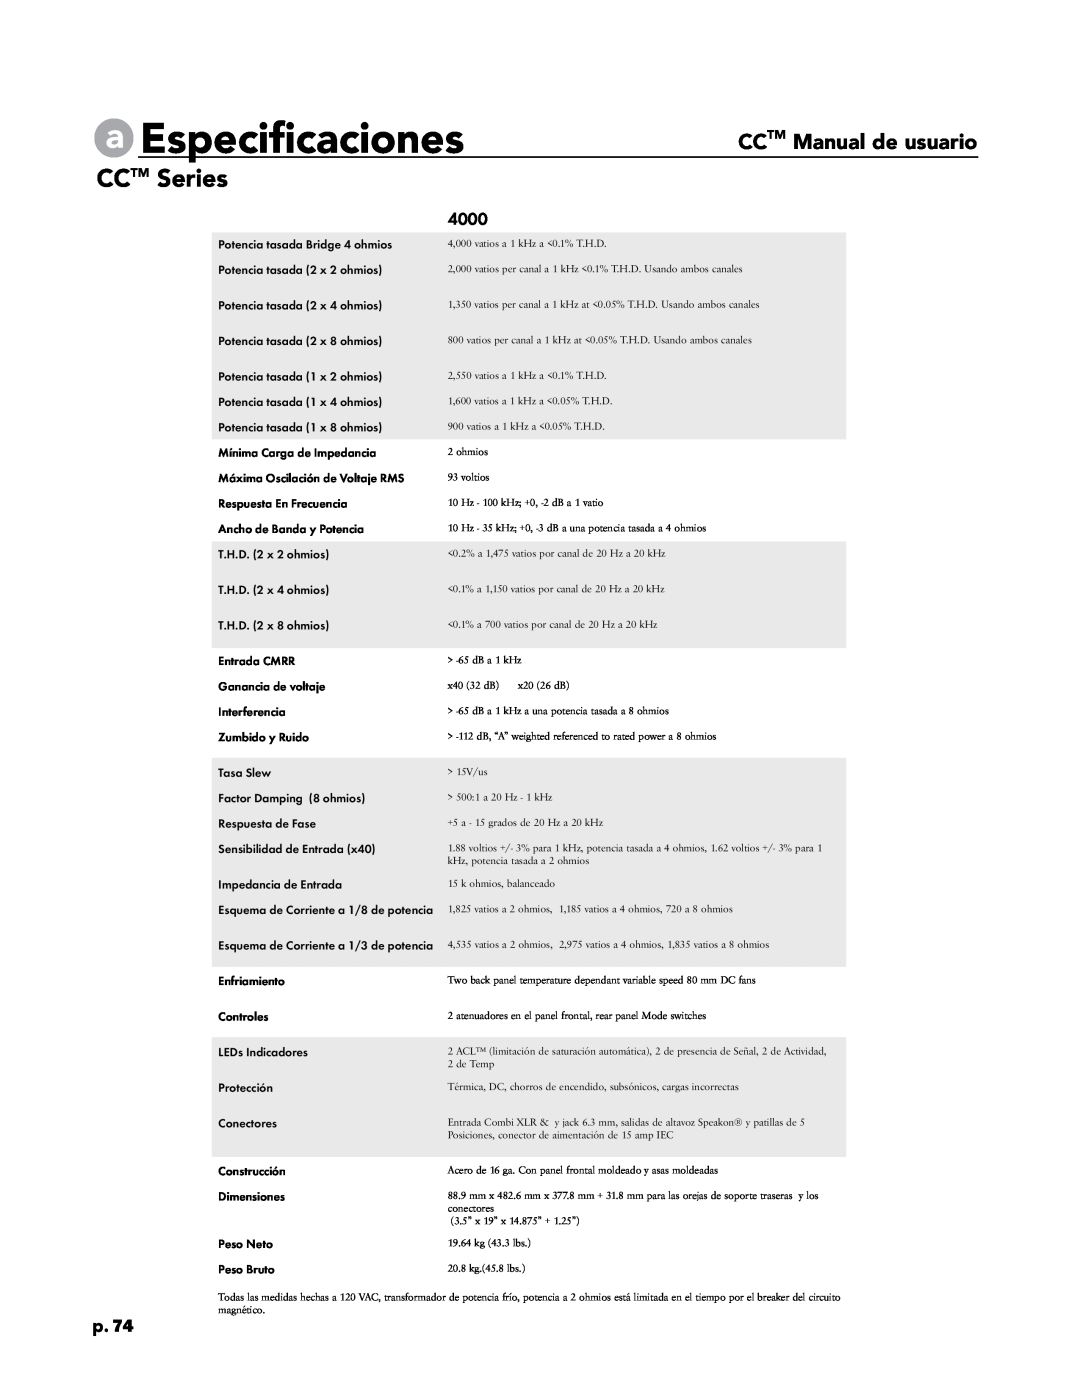 Crest Audio CC 4000, CC 5500, CC 2800, CC 1800 owner manual a Especificaciones, CCTM Series, CCTM Manual de usuario, p.74 